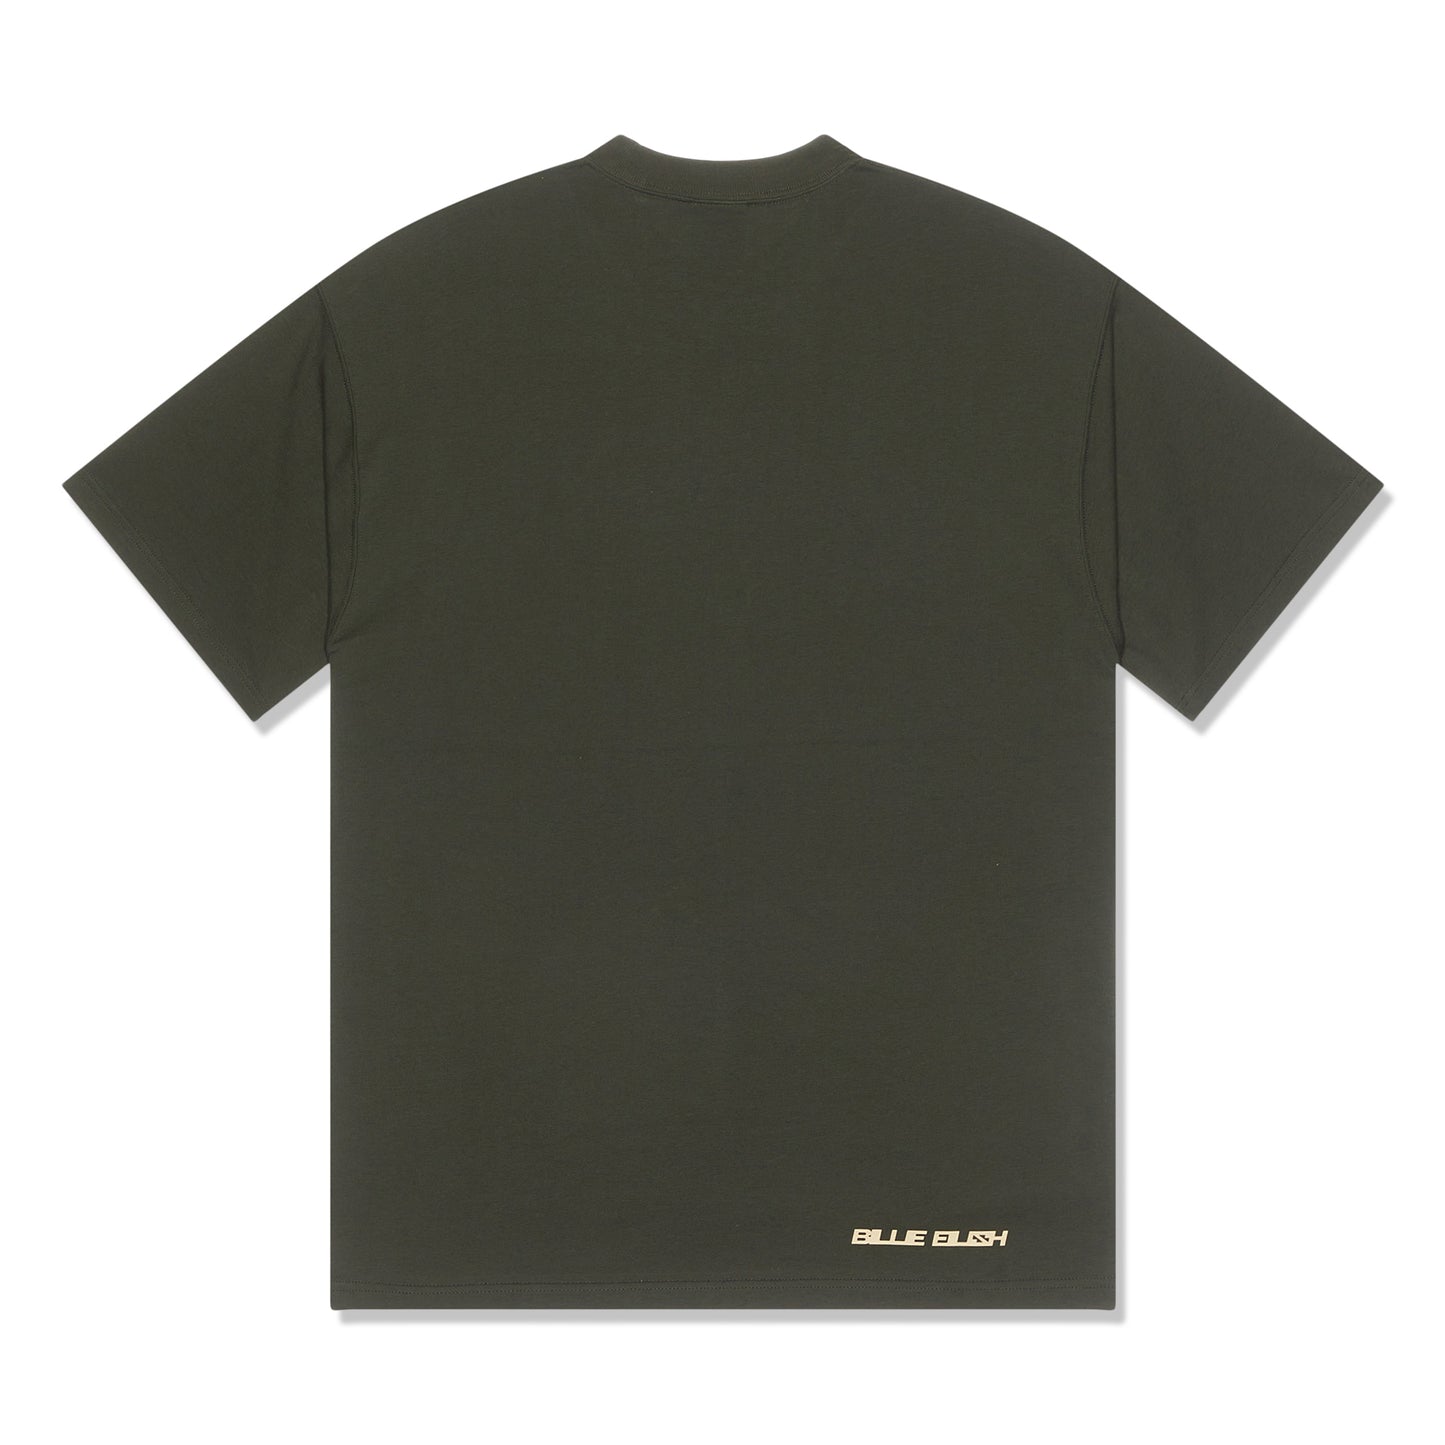 Nike x Billie Eilish T-Shirt (Sequoia/Mushroom)